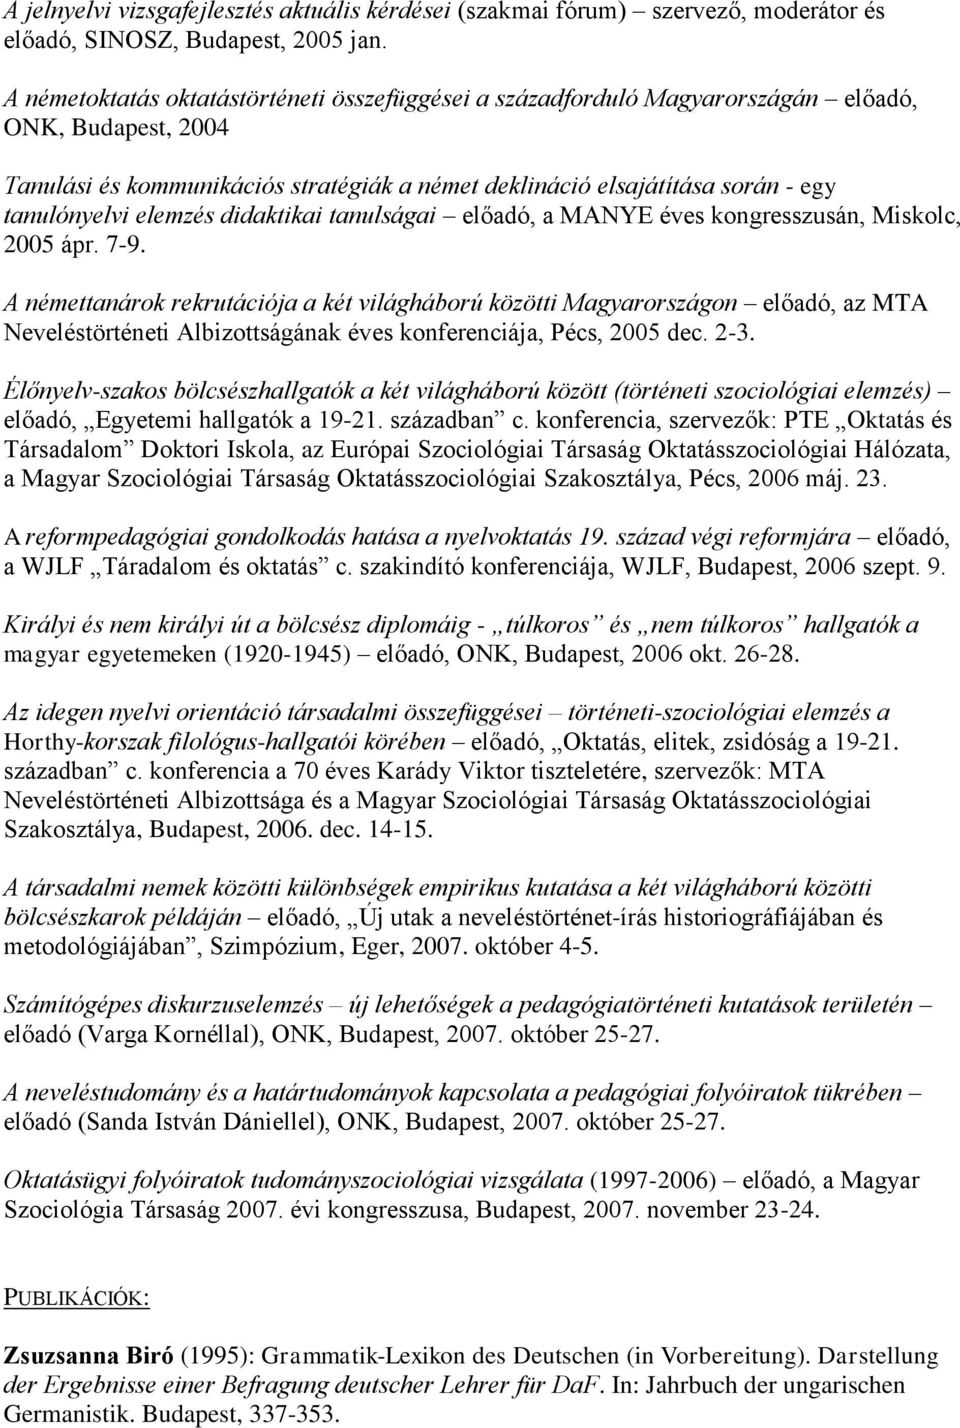 elemzés didaktikai tanulságai előadó, a MANYE éves kongresszusán, Miskolc, 2005 ápr. 7-9.